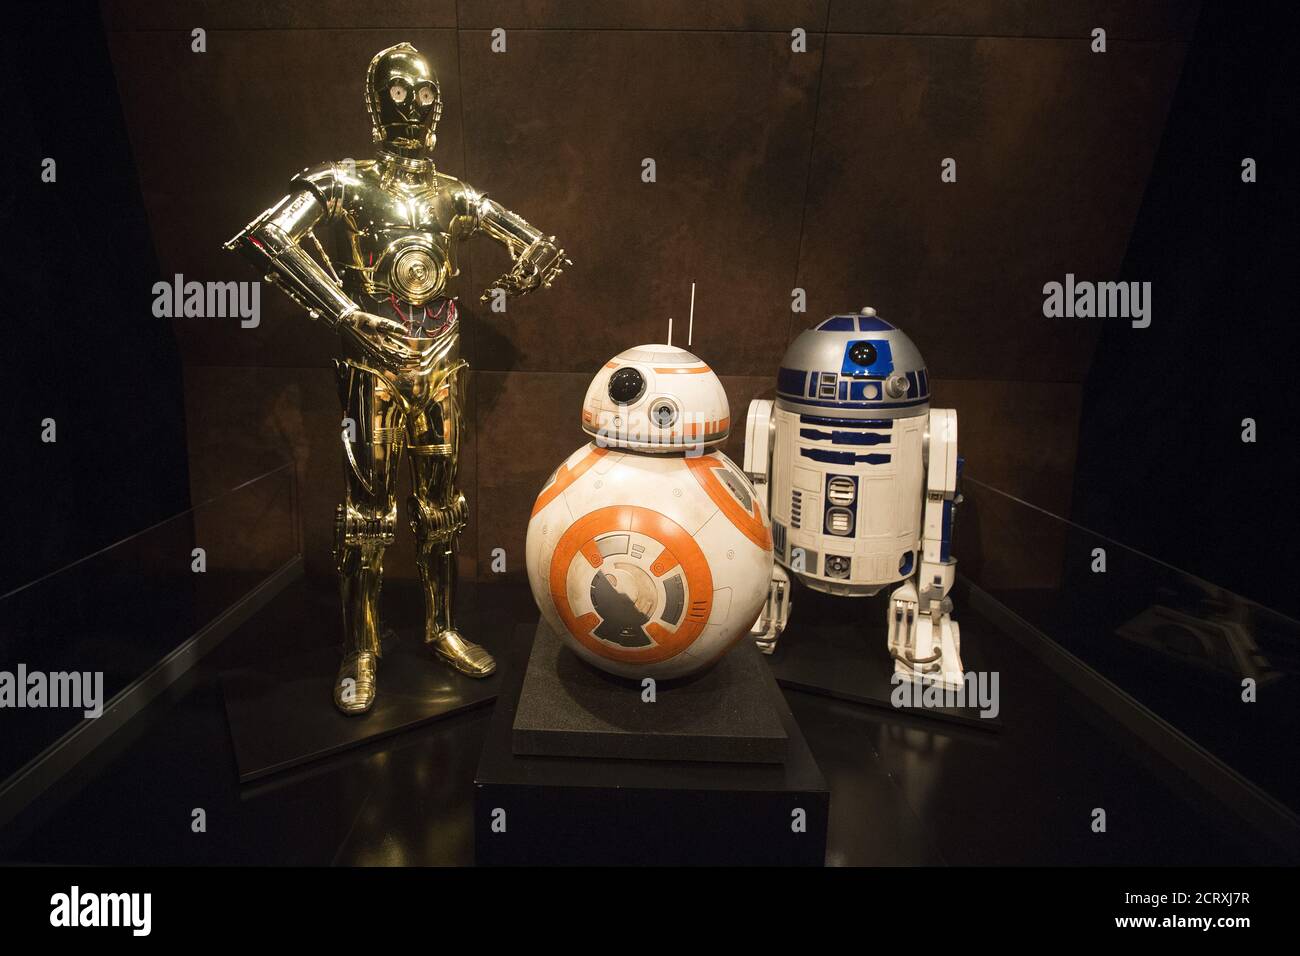 Immagine del personaggio C-3PO del film Star Wars in edizione limitata con fotogramma 